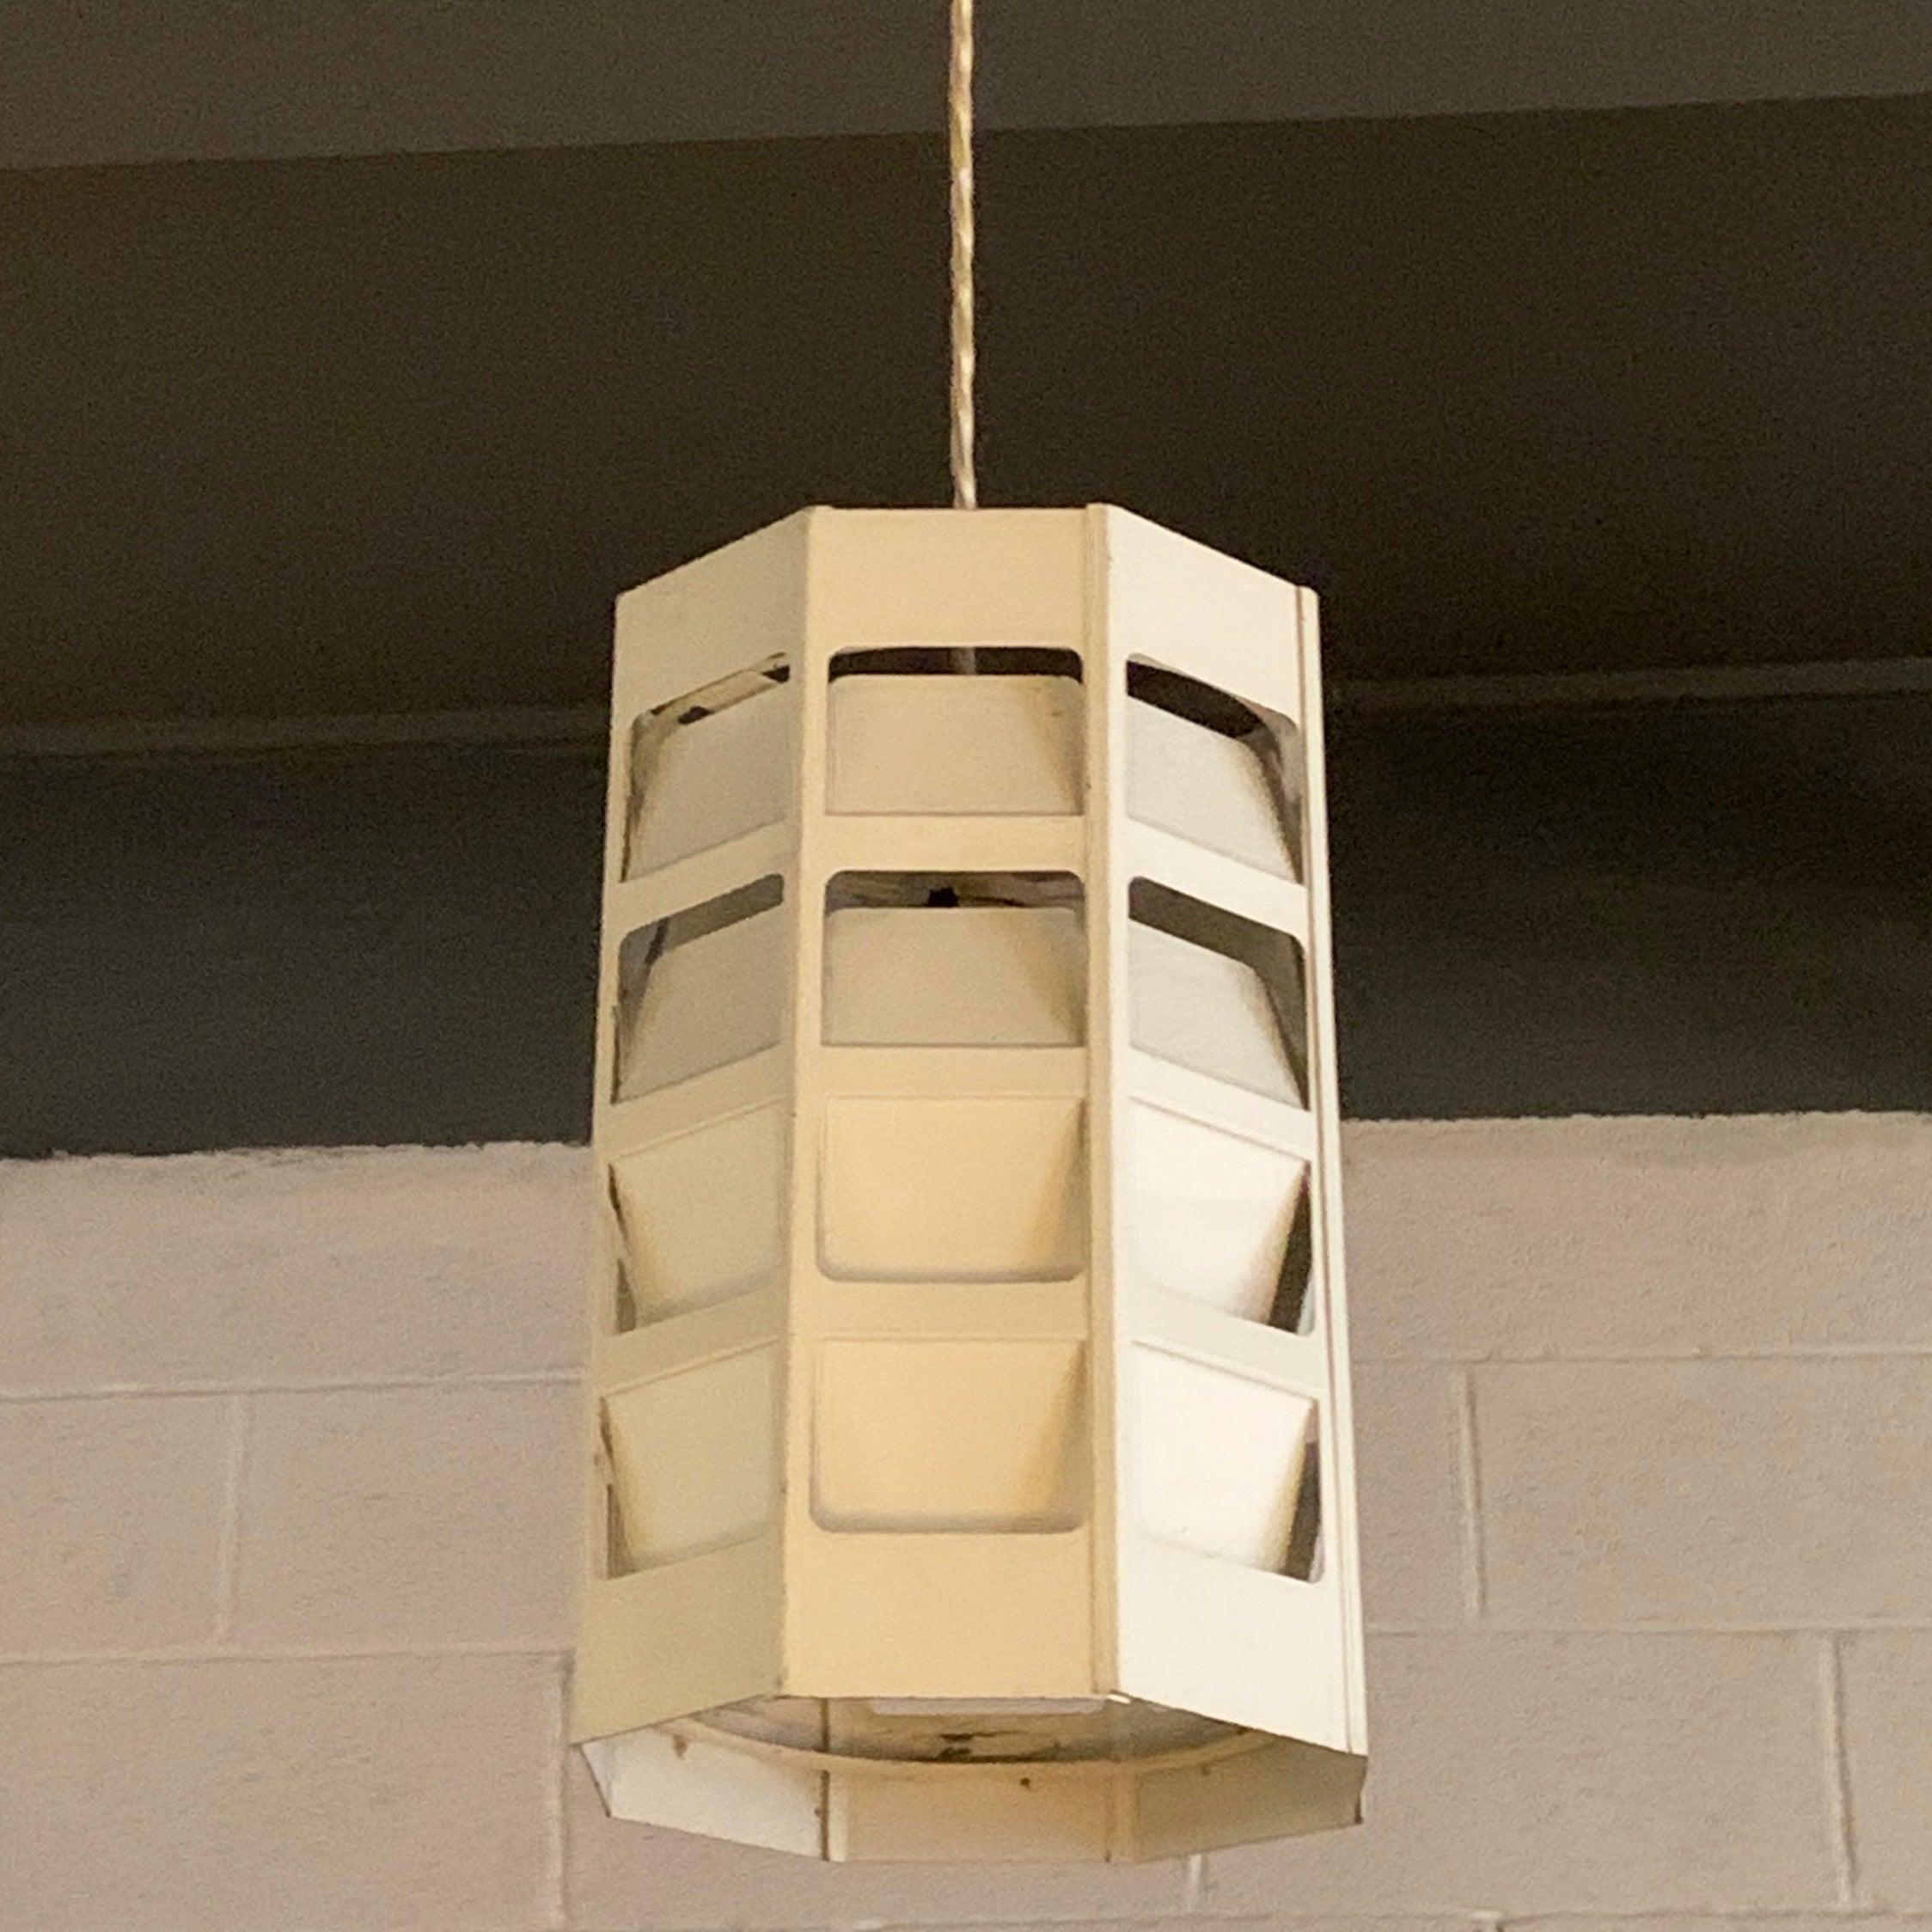 L'étonnante suspension moderne danoise de Poul Gernes pour Louis Poulsen présente un cylindre en métal blanc à facettes qui émet de la lumière à travers ses sections pliées et découpées. Les images montrent le pendentif atténué et complètement